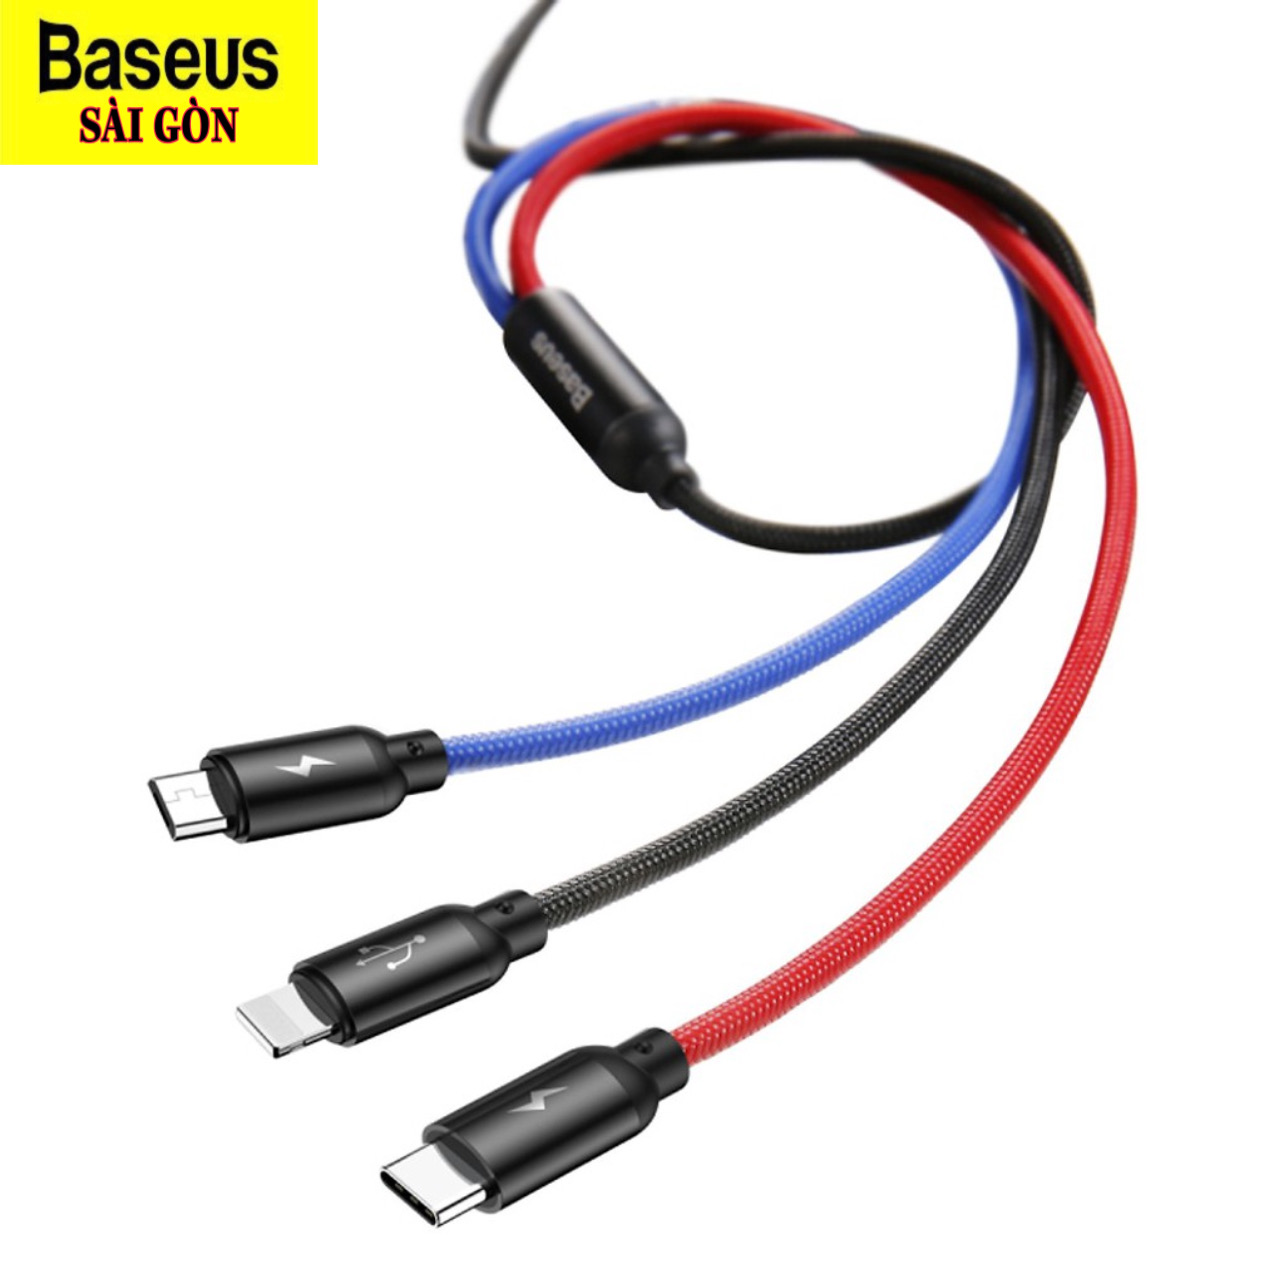 Hình ảnh Cáp sạc 3 đầu và truyền dữ liệu tốc độ cao Baseus Three Primary Colors 3 in 1 cable CAMLT-BSY (USB to Type C/ Micro/ Light-ning Fast Charging Cable, 3.5A)- Hàng chính hãng